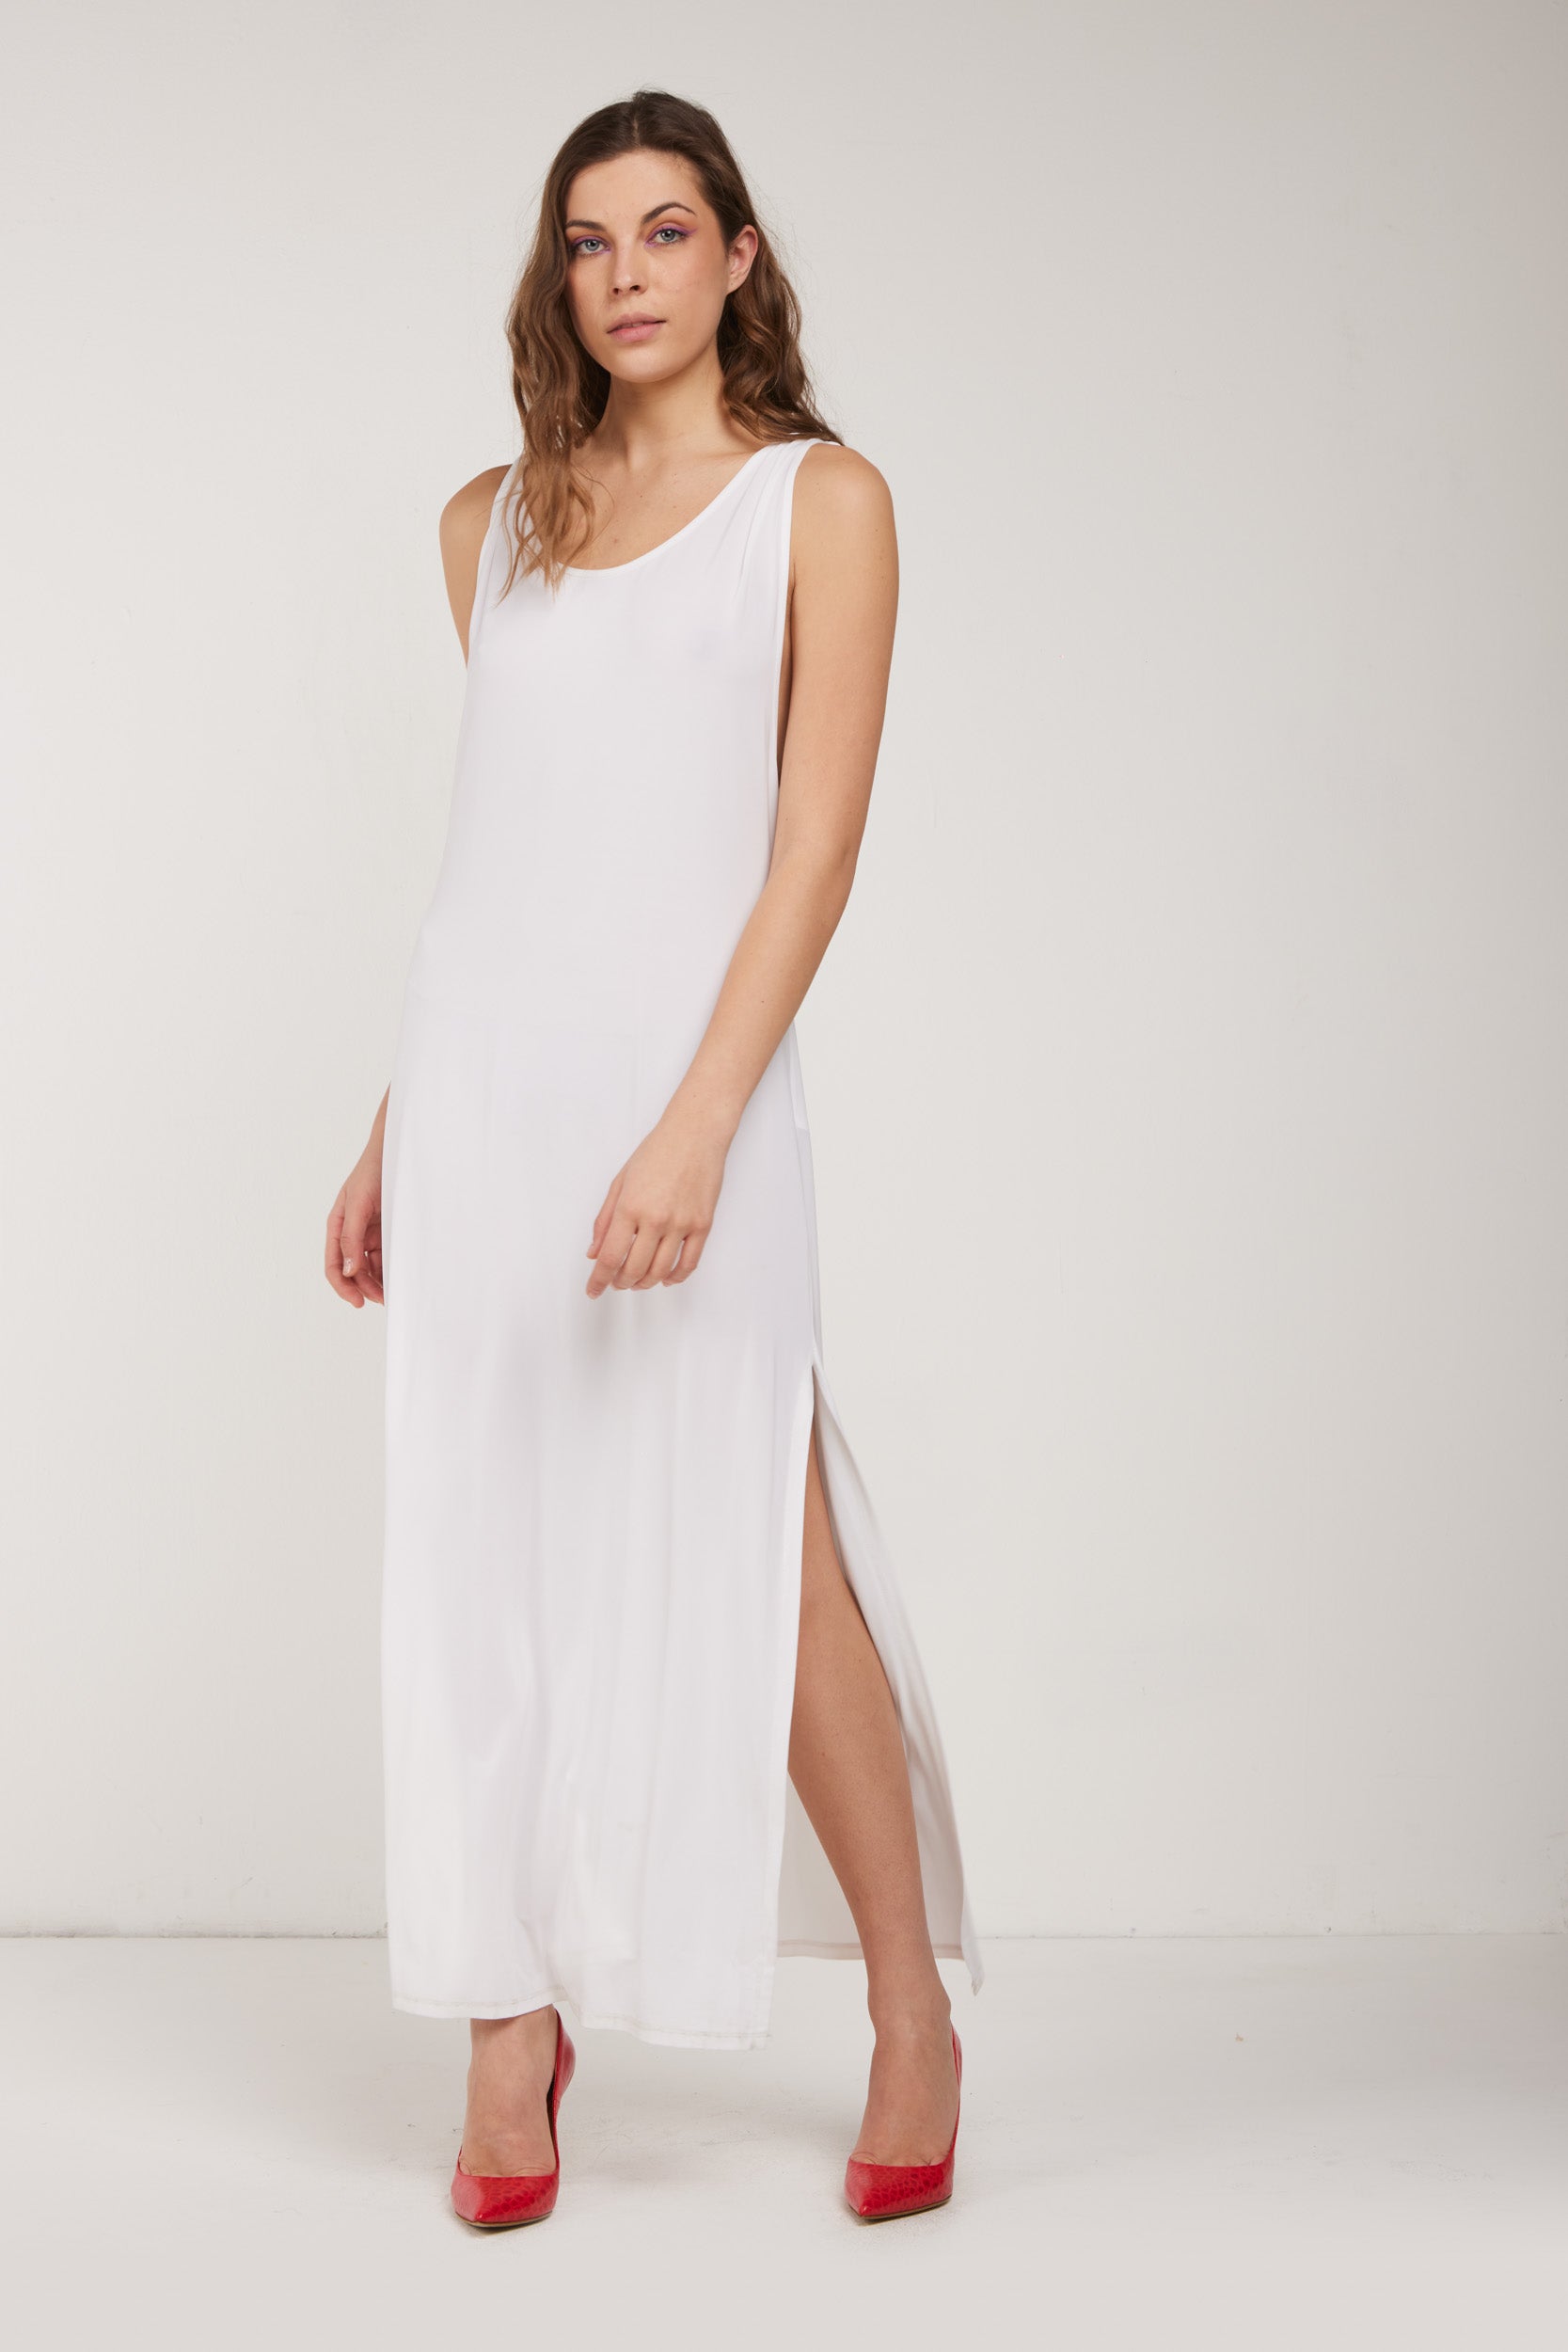 TWINSET white dress